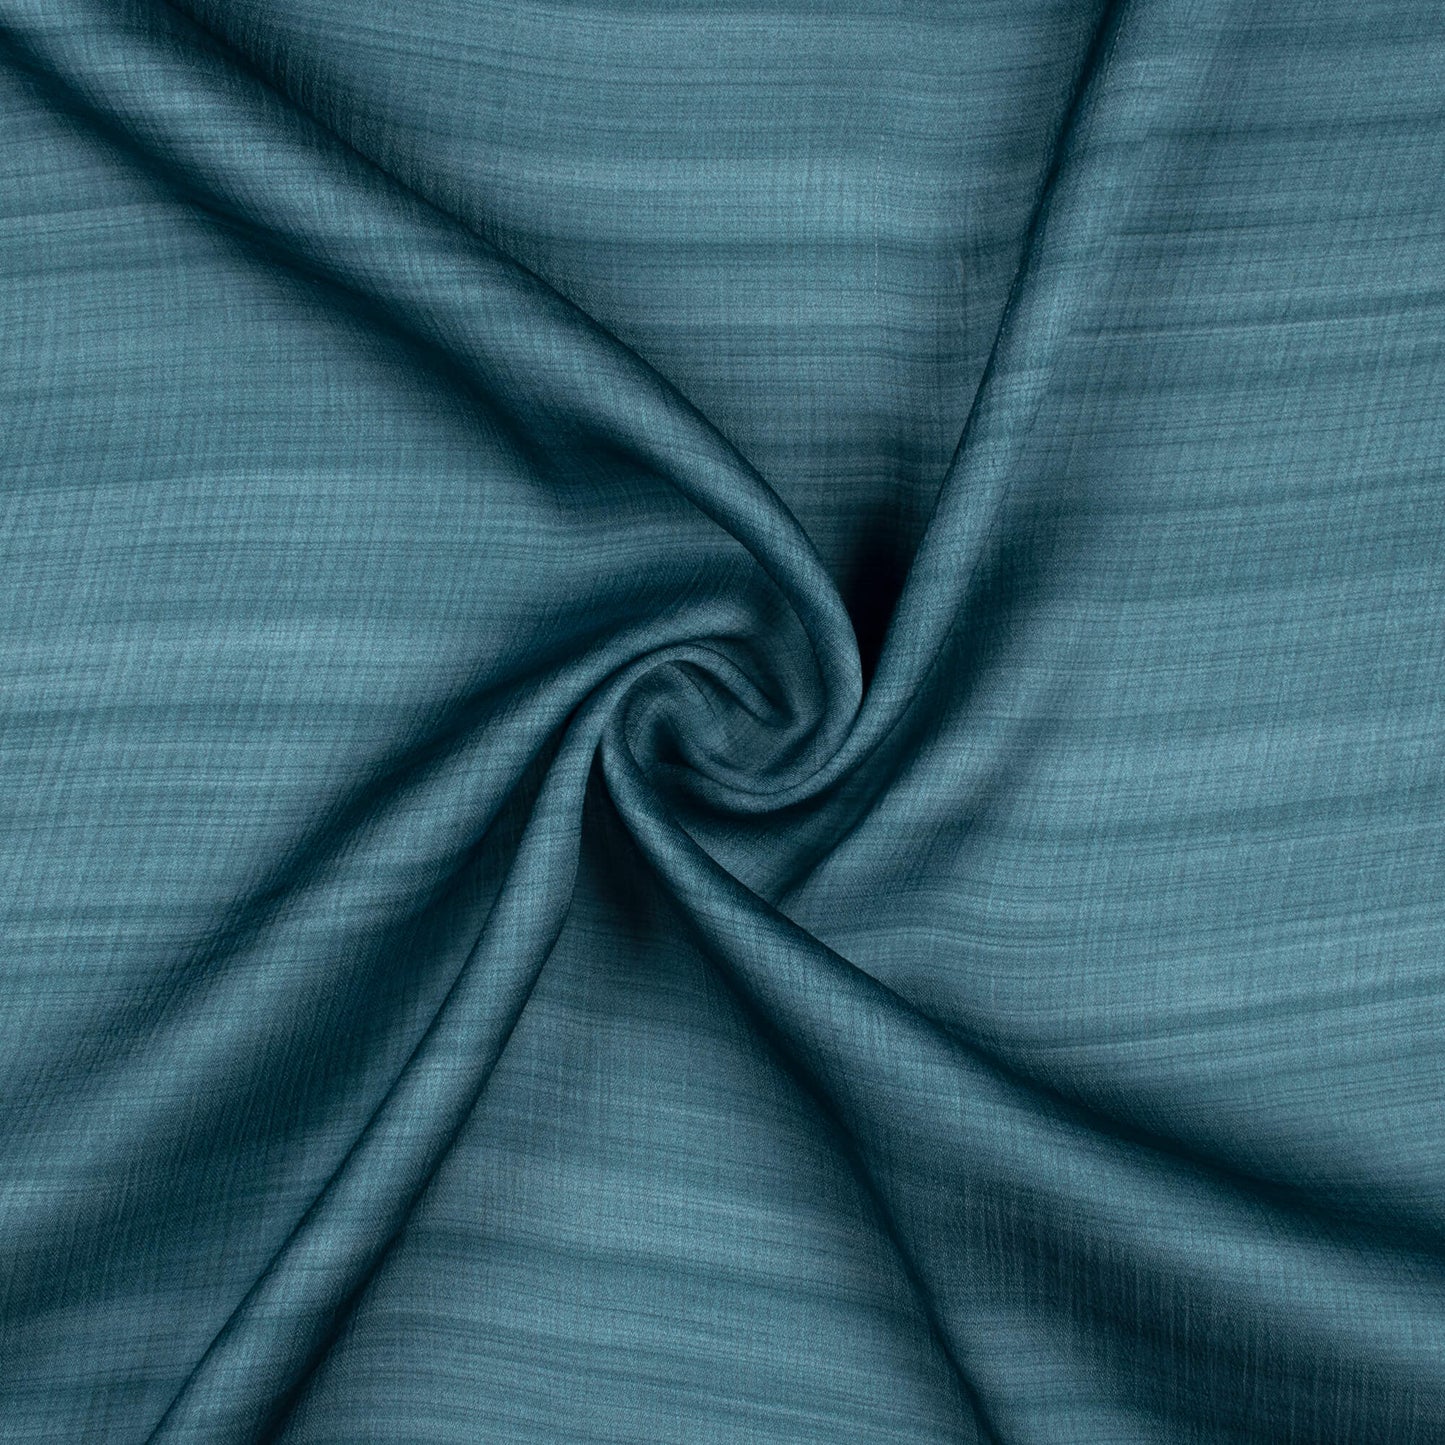 Smalt Blue Texture Pattern Digital Print Chiffon Satin Fabric